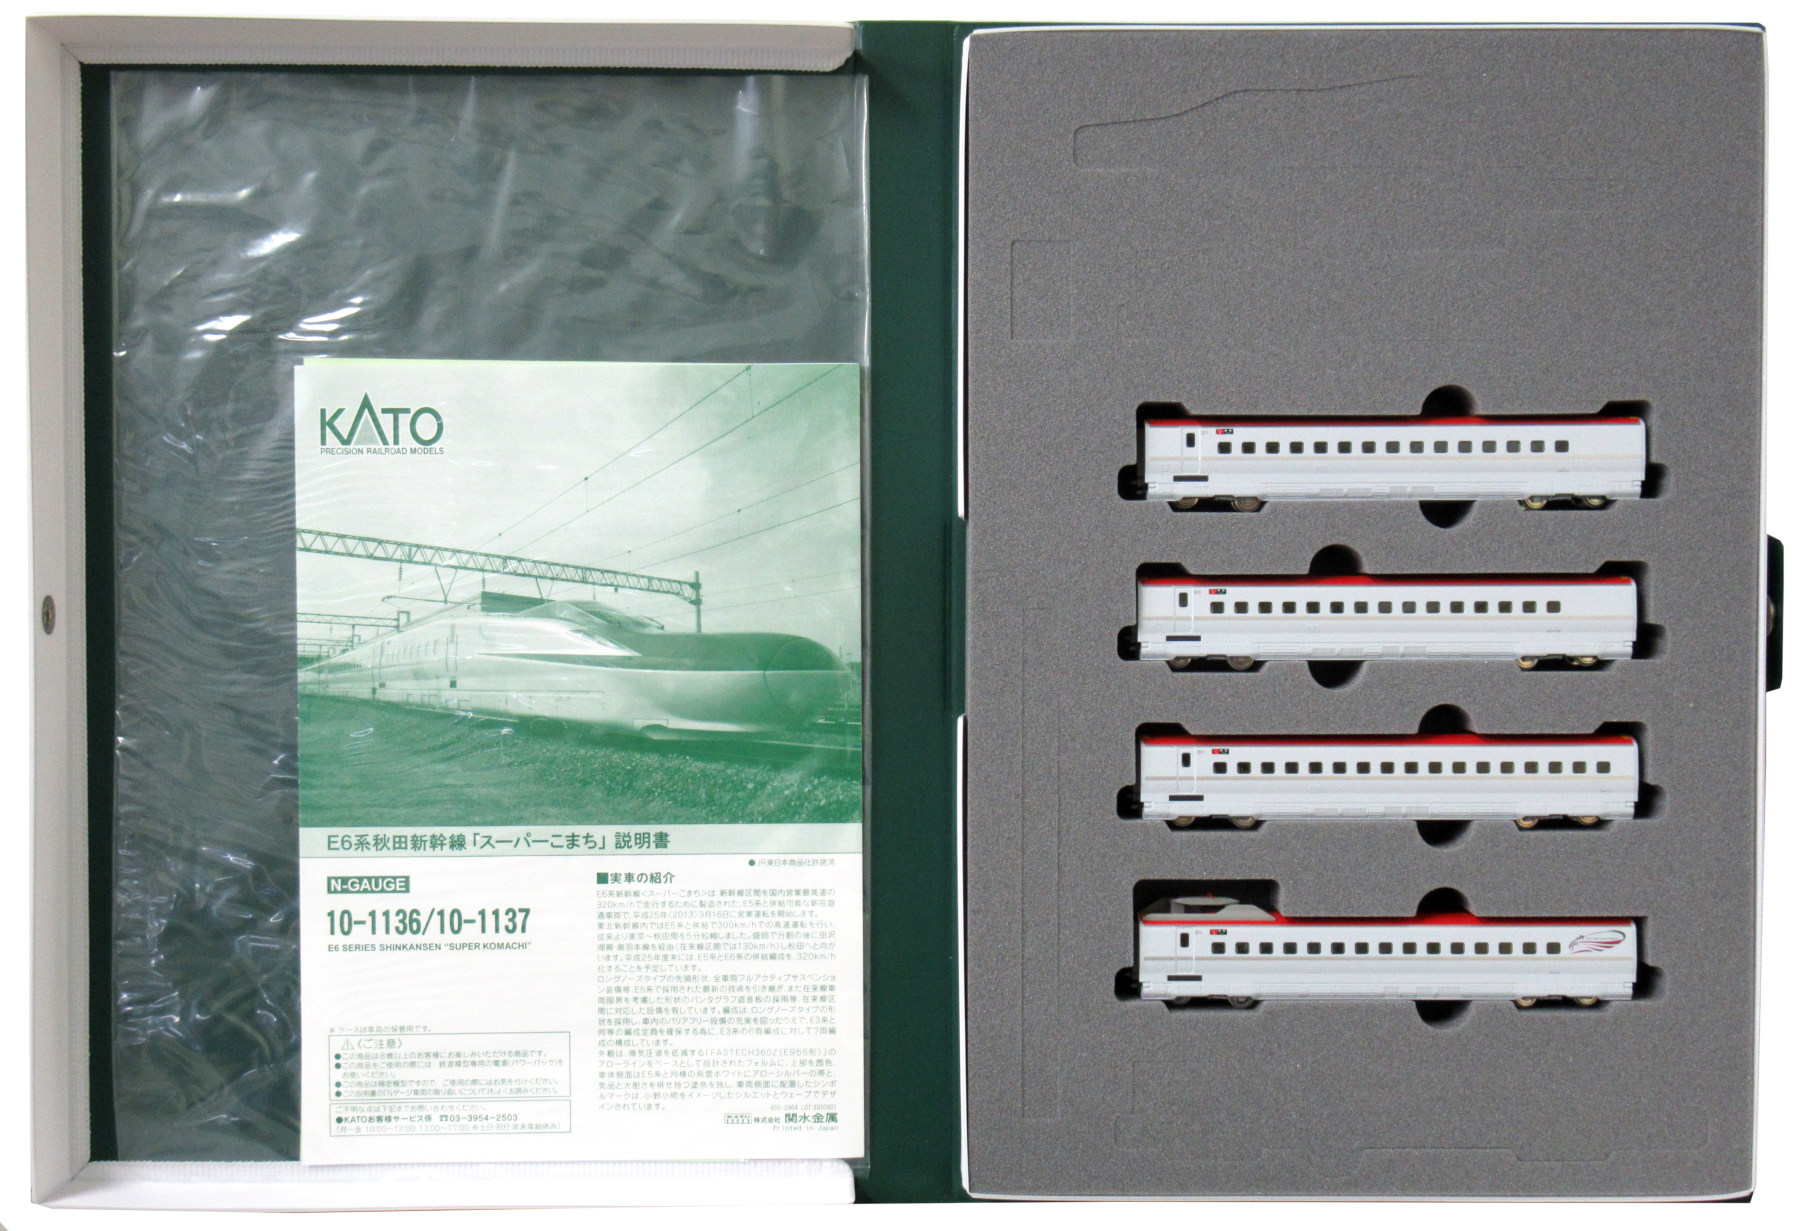 【販売安心】kato E6系 7両セット 品番10-1136・37 動力車動作・ライト点灯確認済み 新幹線